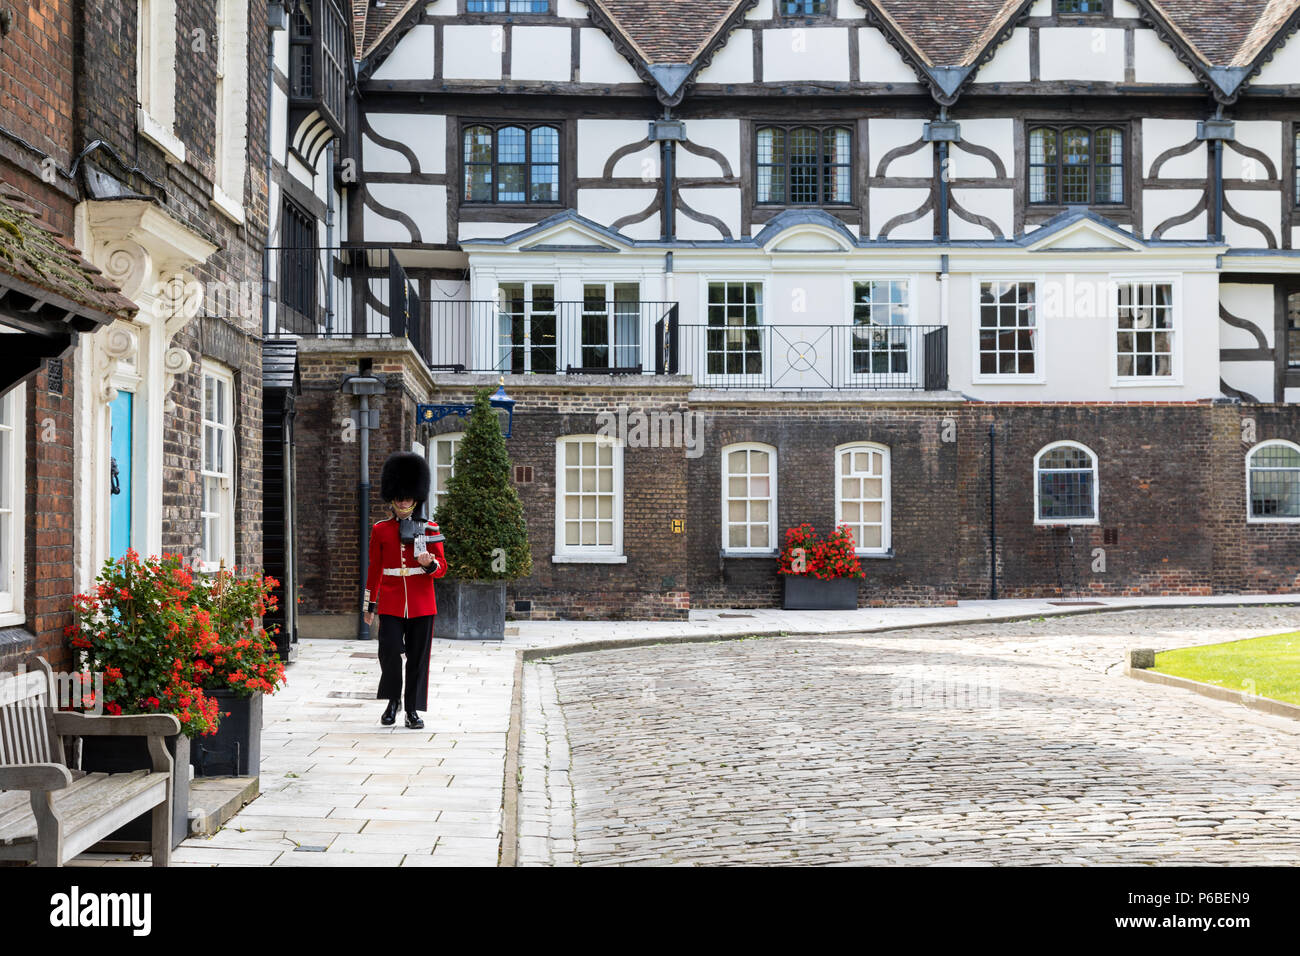 London,UK - 7 juin 2017 : Chalets et quartiers résidentiel à l'intérieur de la Tour de Londres. Un garde en uniforme rouge et noir traditionnel, des marches d'alon Banque D'Images